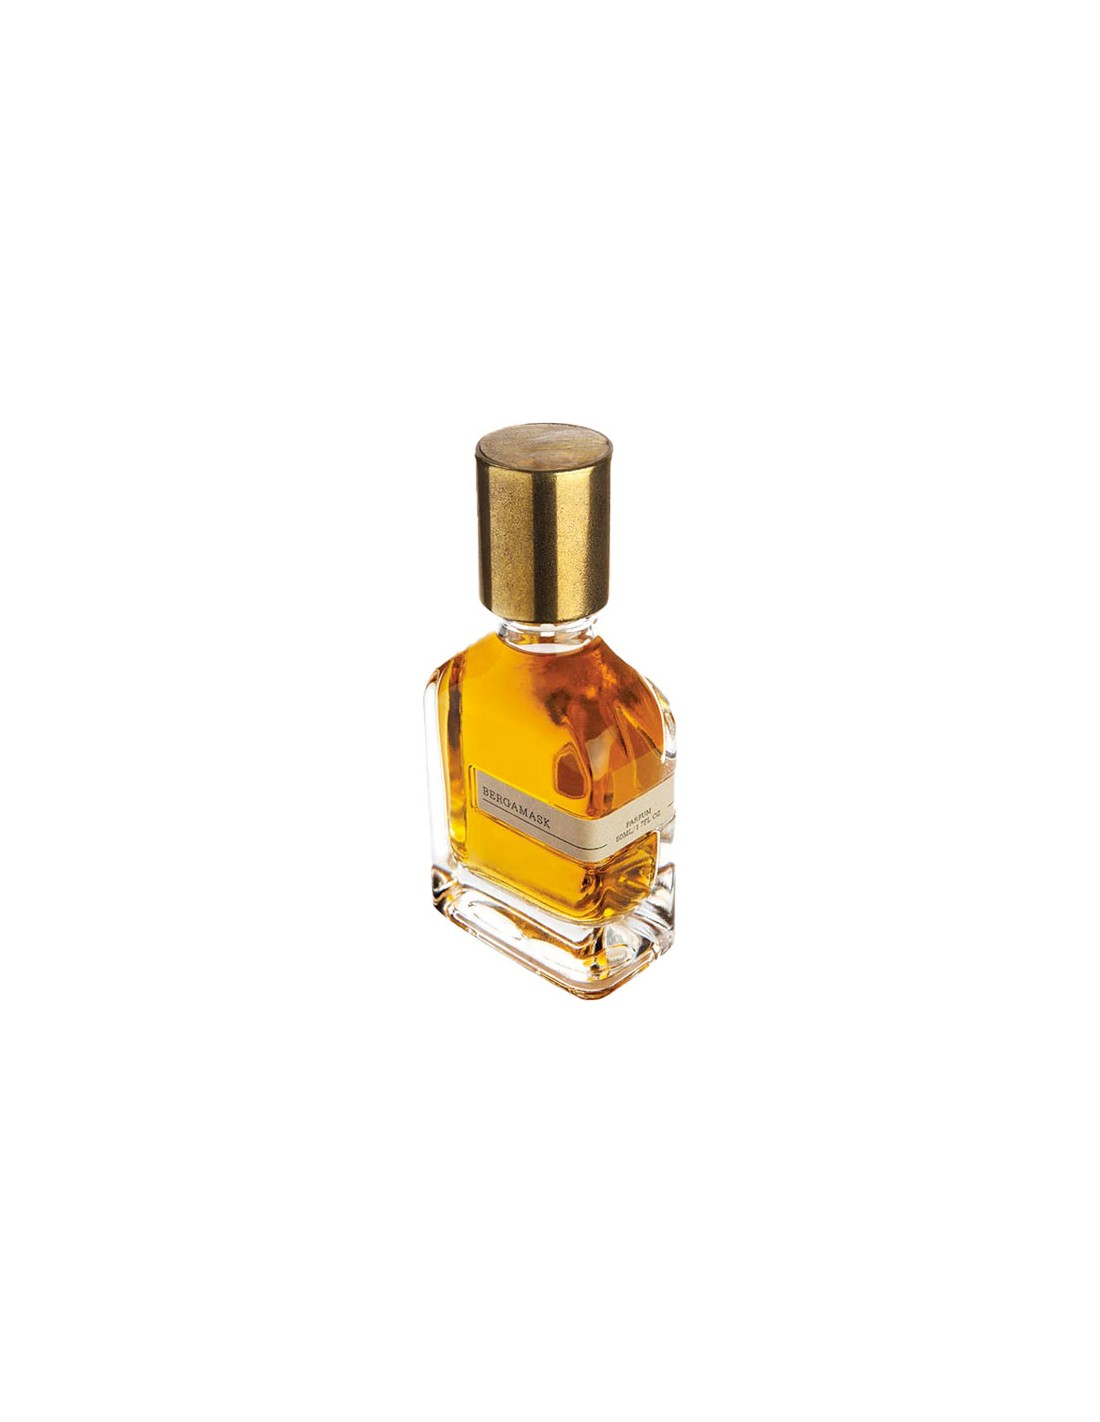 Orto Parisi Bergamask Parfum 50 ml - Profumo 100% Originale